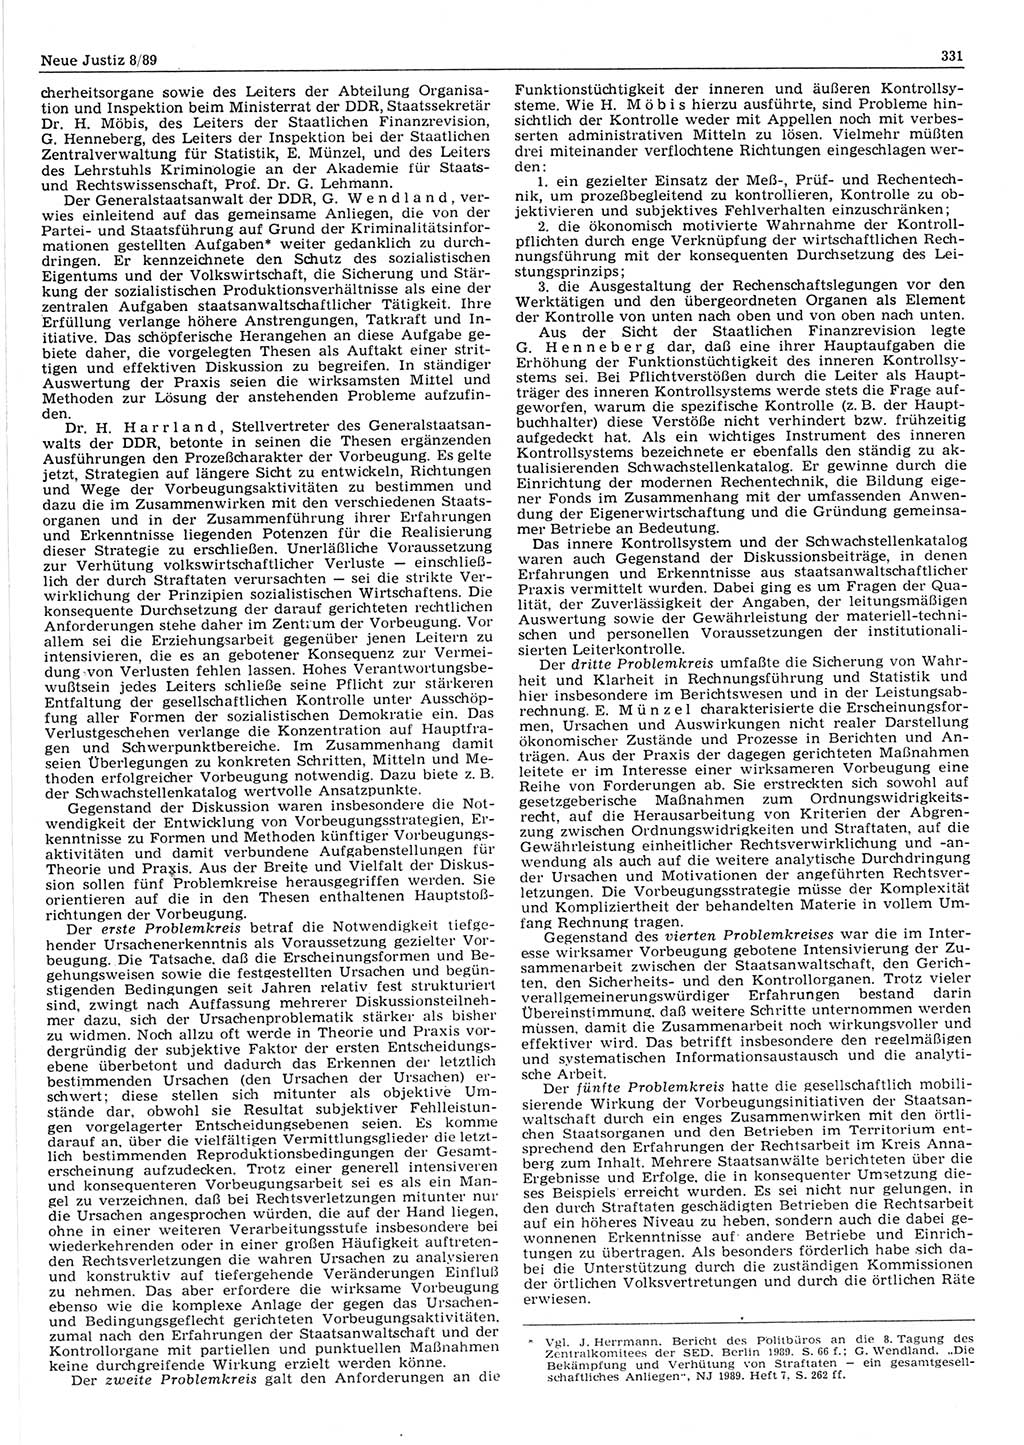 Neue Justiz (NJ), Zeitschrift für sozialistisches Recht und Gesetzlichkeit [Deutsche Demokratische Republik (DDR)], 43. Jahrgang 1989, Seite 331 (NJ DDR 1989, S. 331)